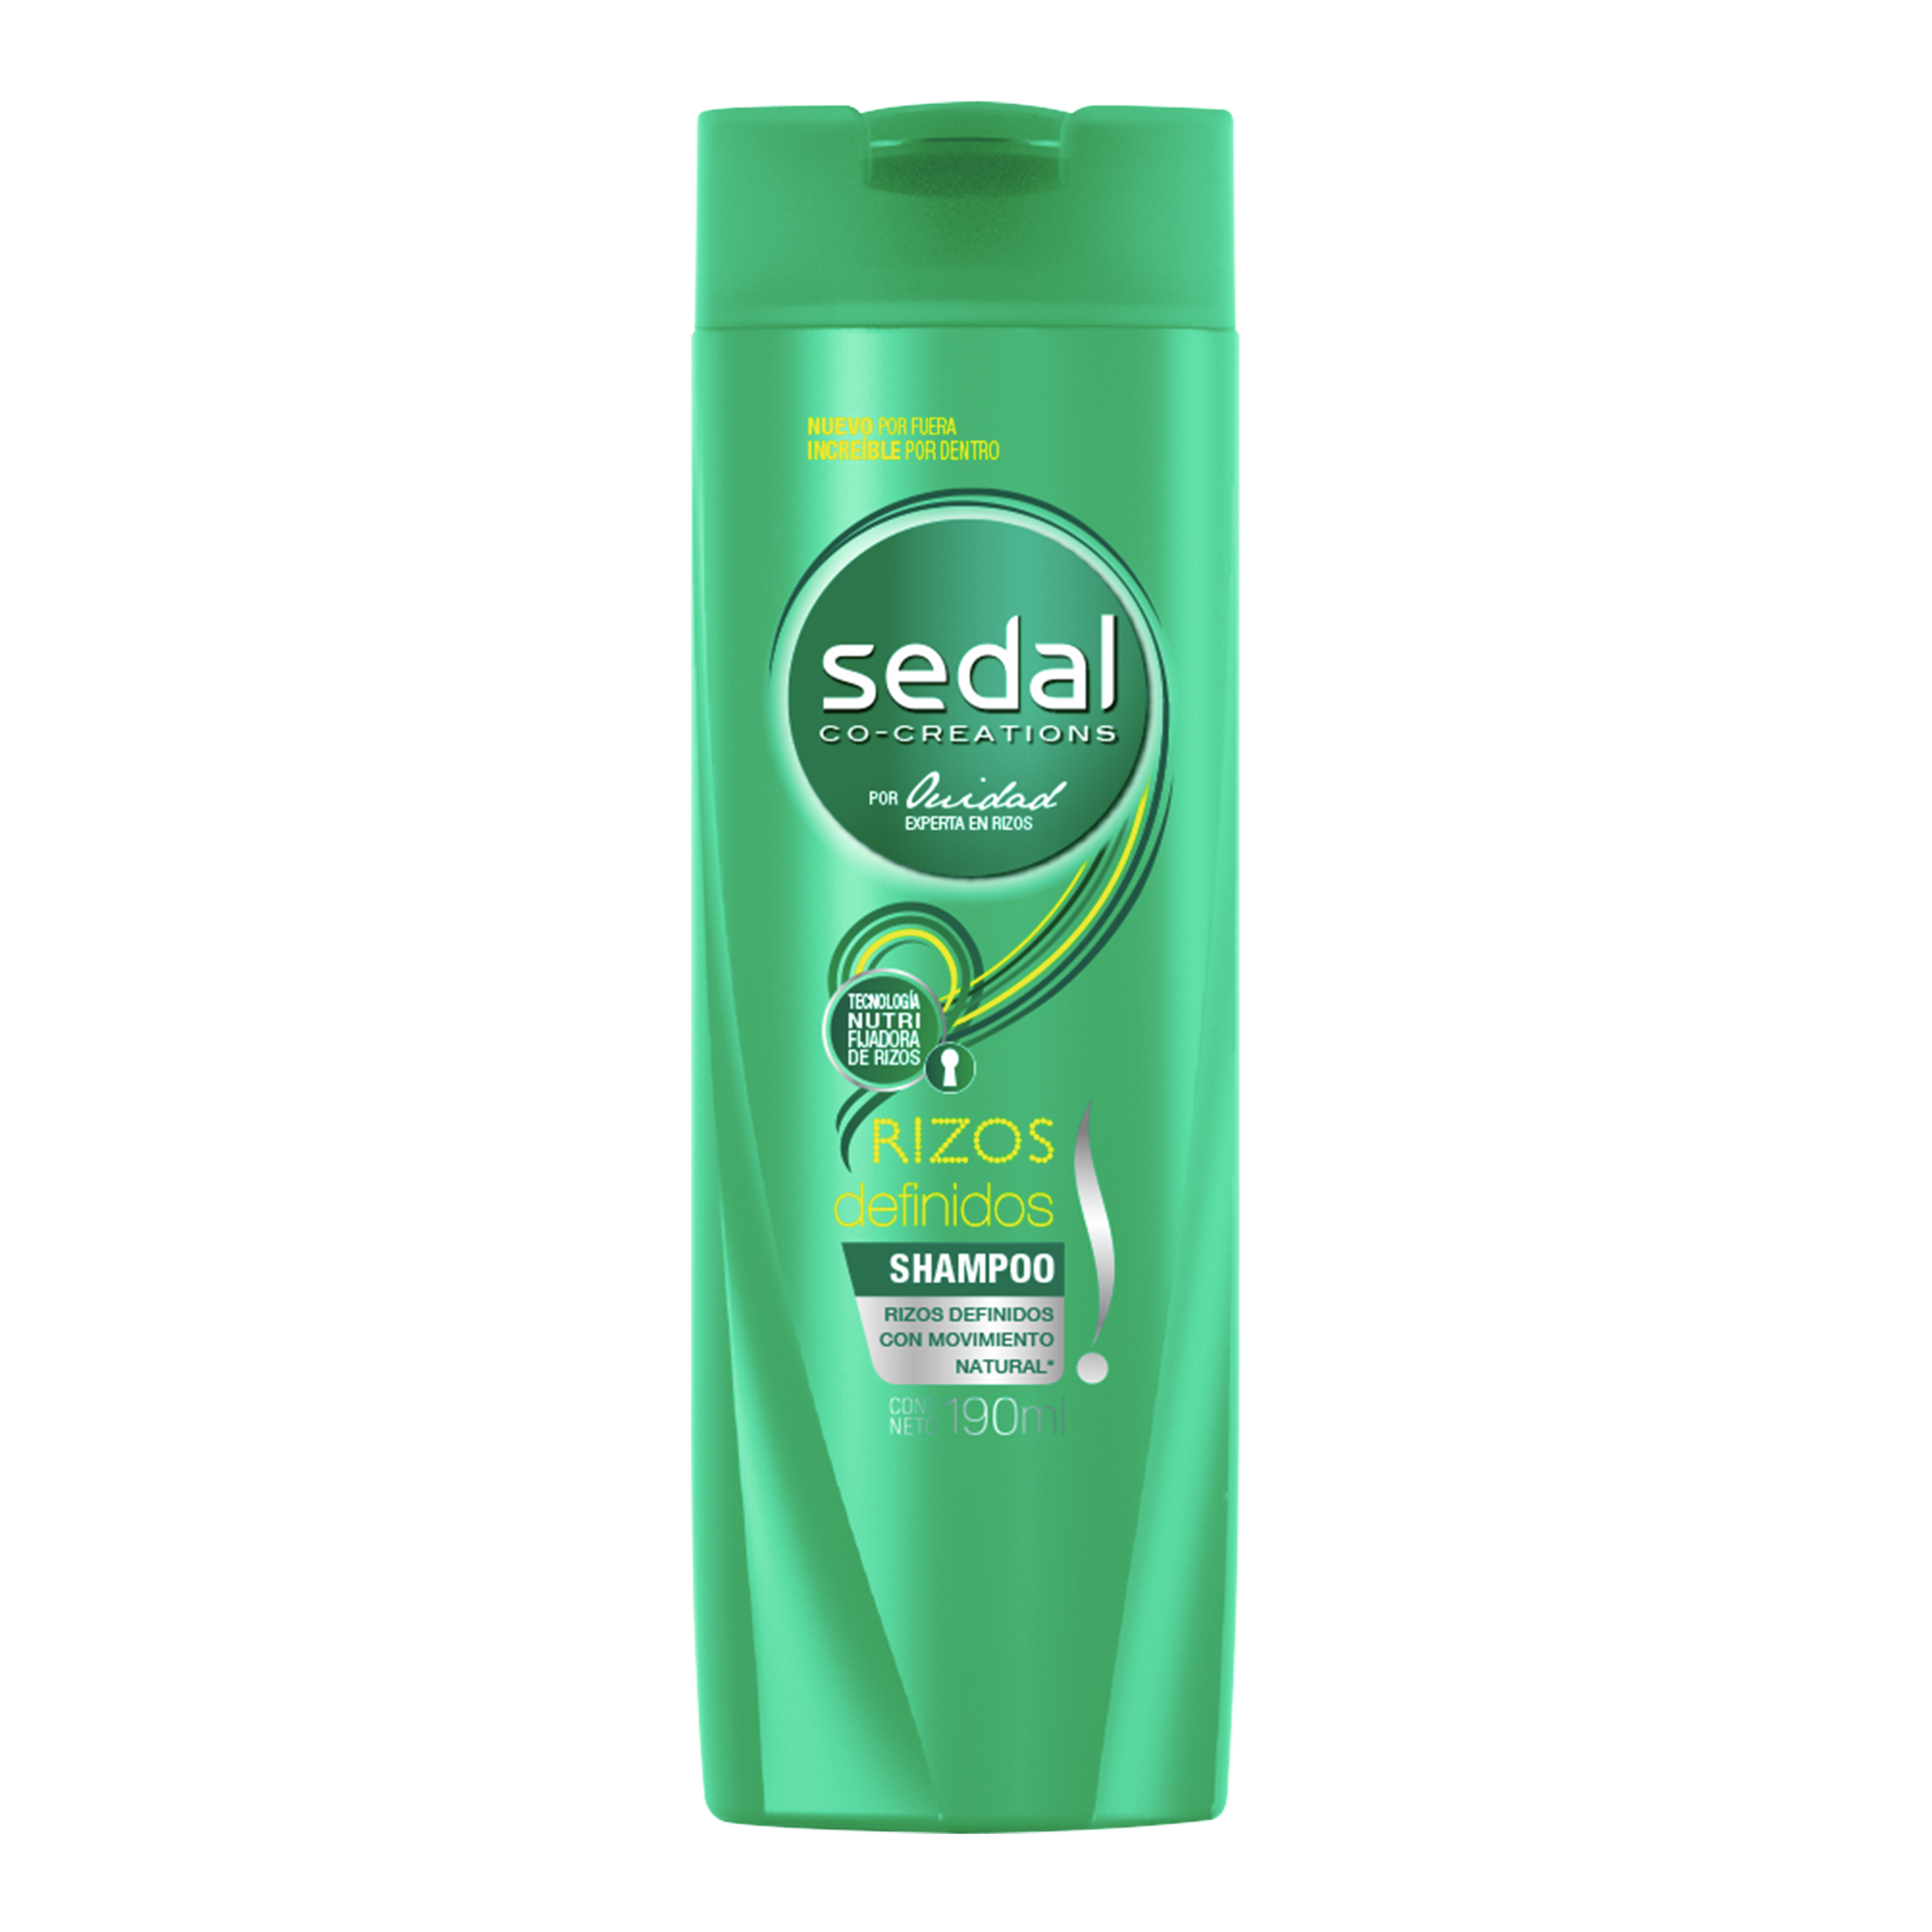 Imagen al frente del paquete Sedal Shampoo Rizos Definidos 190 ml